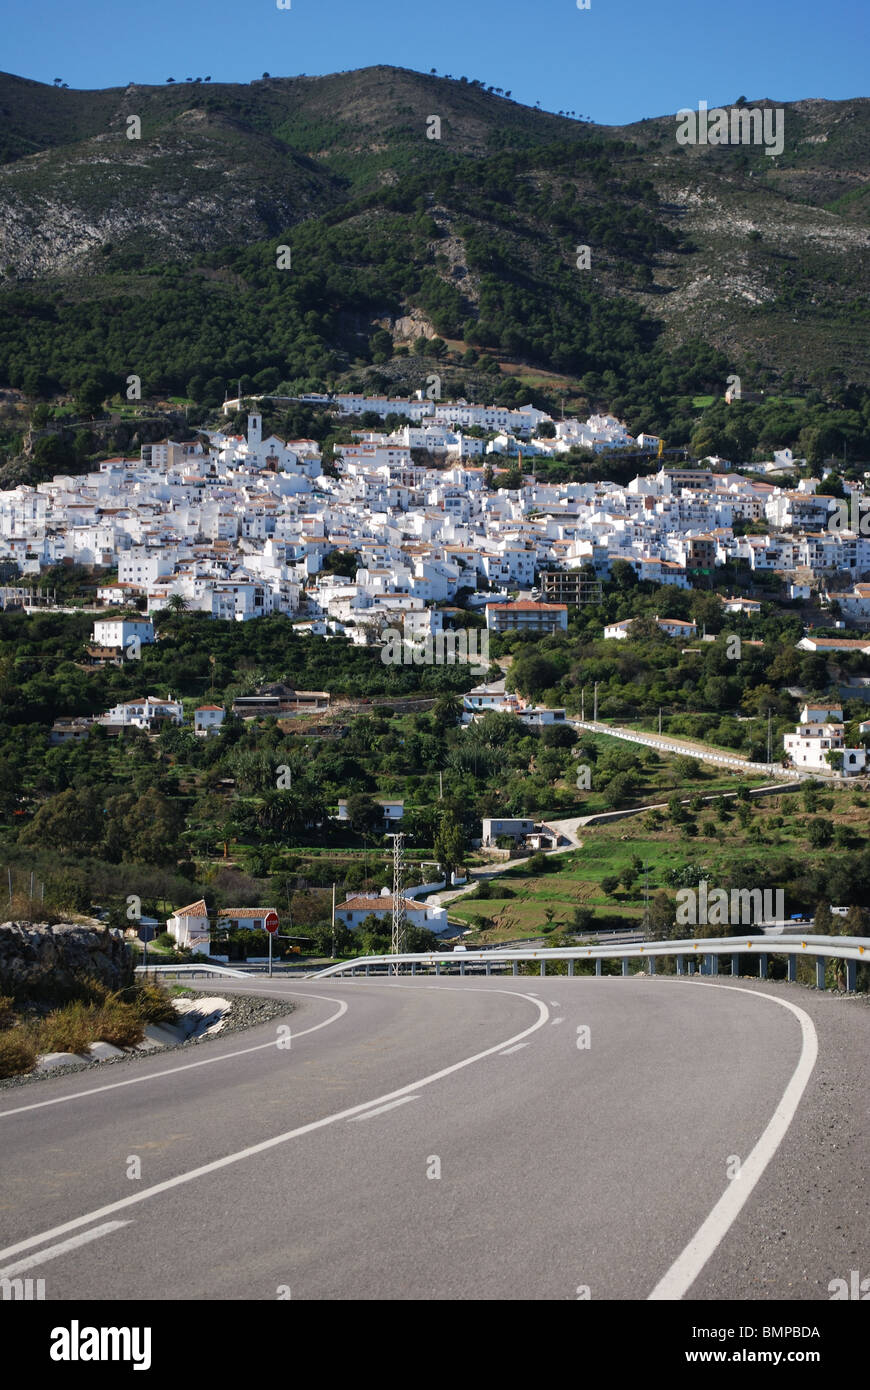 Blick auf das Dorf, weiß getünchten Dorf (Pueblo Blanco), Westeuropa Casarabonela, Provinz Malaga, Andalusien, Spanien. Stockfoto